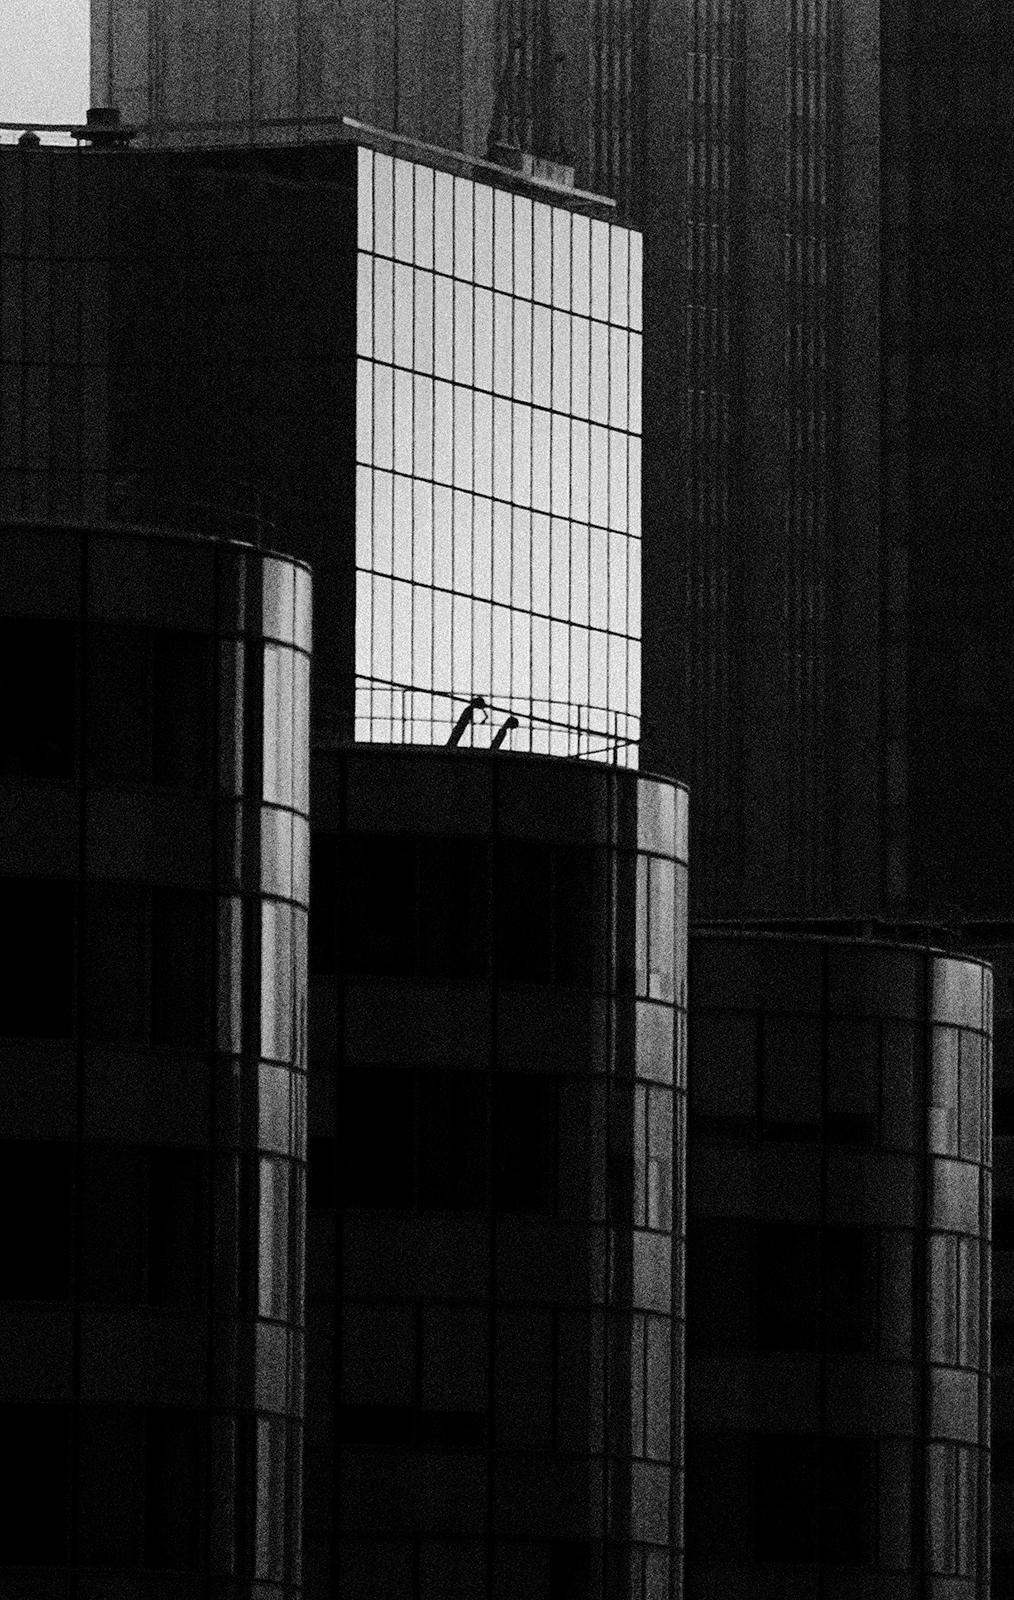 La Défense 1 - Signed limited edition architectural print, Black white, City Paris - Photograph by Ian Sanderson